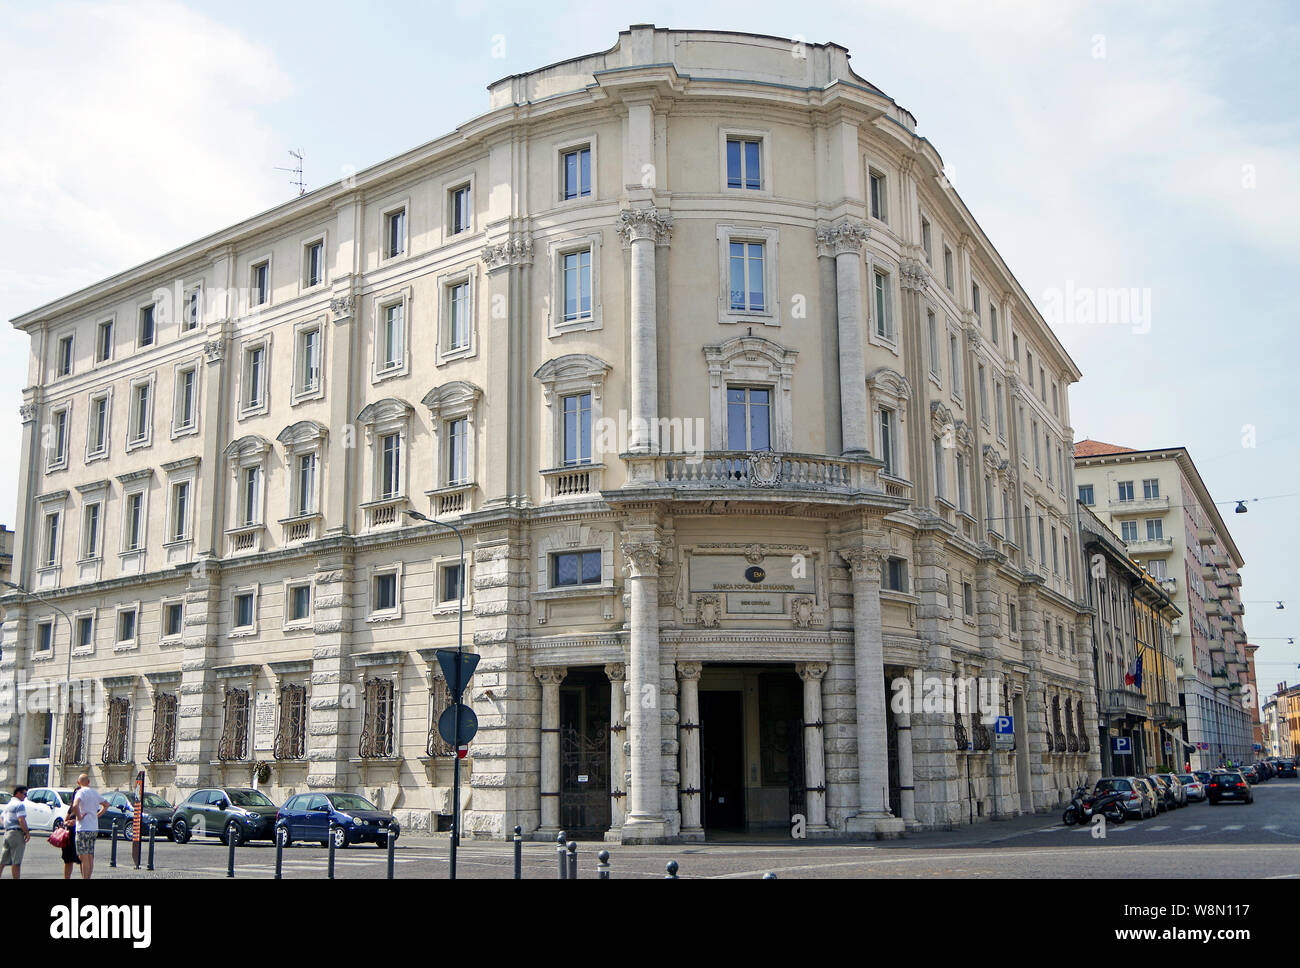 Elegantes Gebäude aus Stein im neo-barocken Stil, das ehemalige Hauptquartier der Banco Popolare di Mantove, eine Co-operative Bank, in Mantua Italien Stockfoto